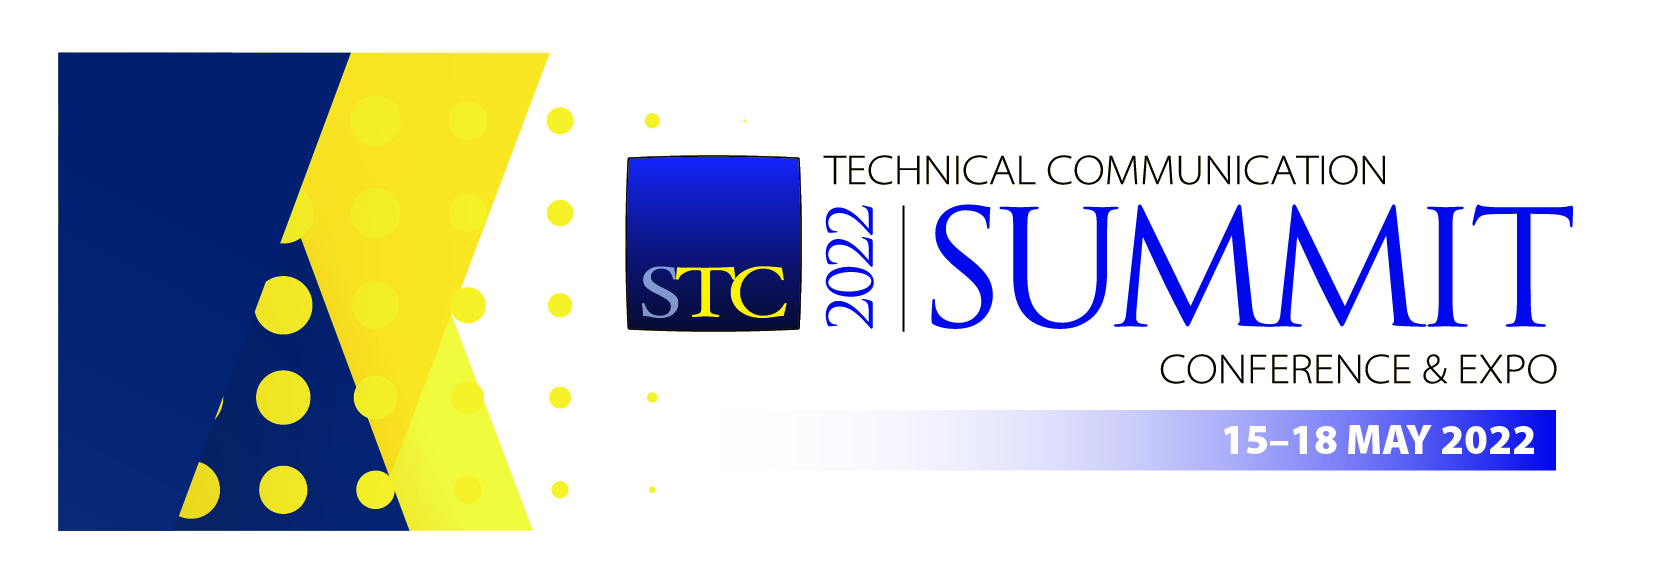 2022 Technical Communication Summit 15-18 May